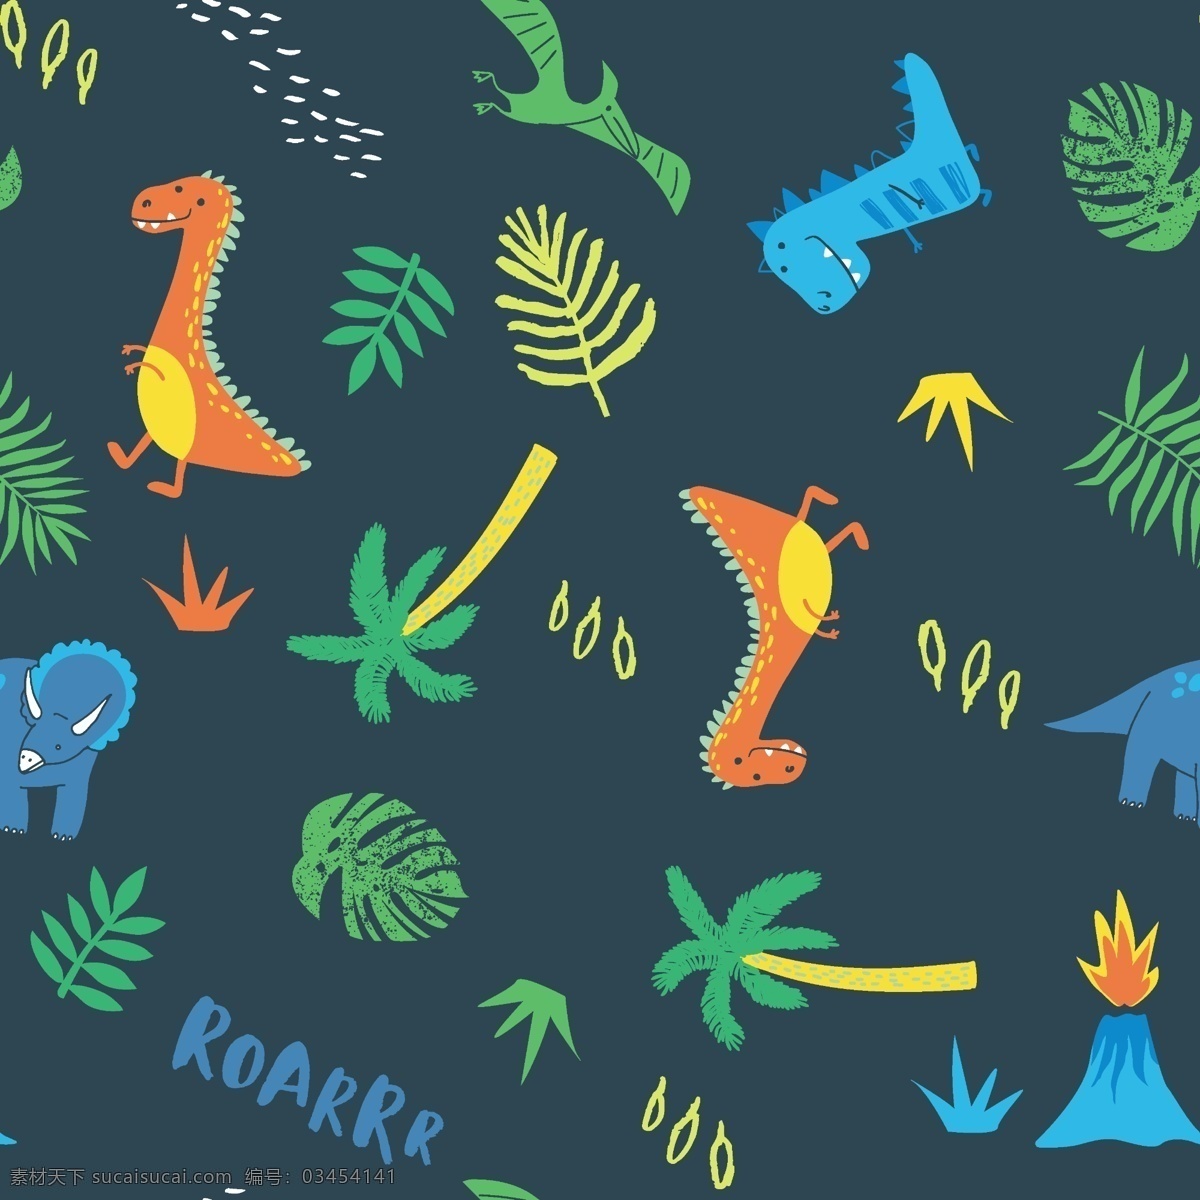 森林恐龙图片 森林 恐龙 叶子 小树 卡通 分层